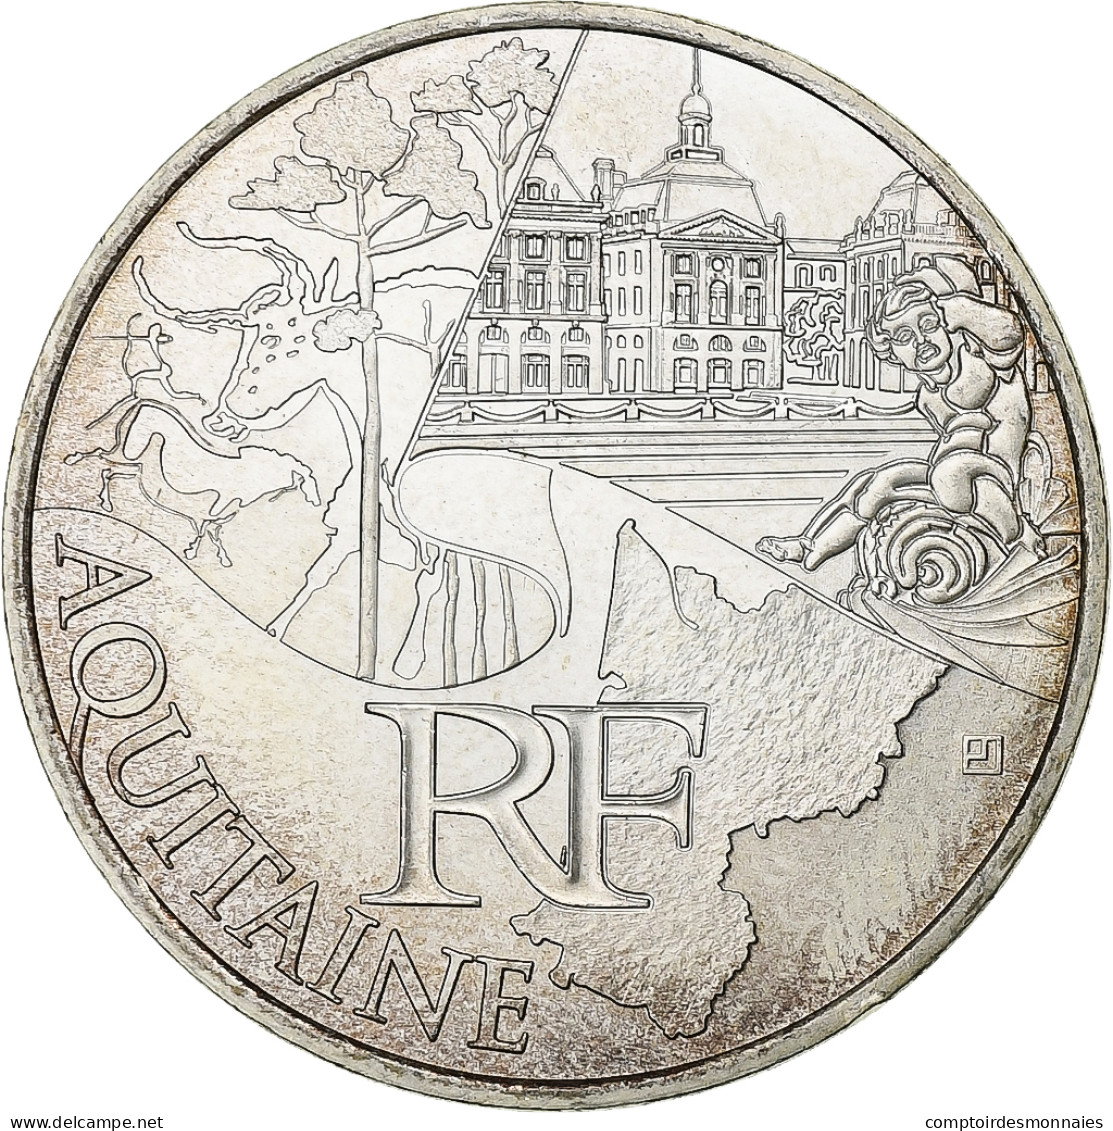 France, 10 Euro, 2011, Paris, Argent, SUP+, KM:1727 - France